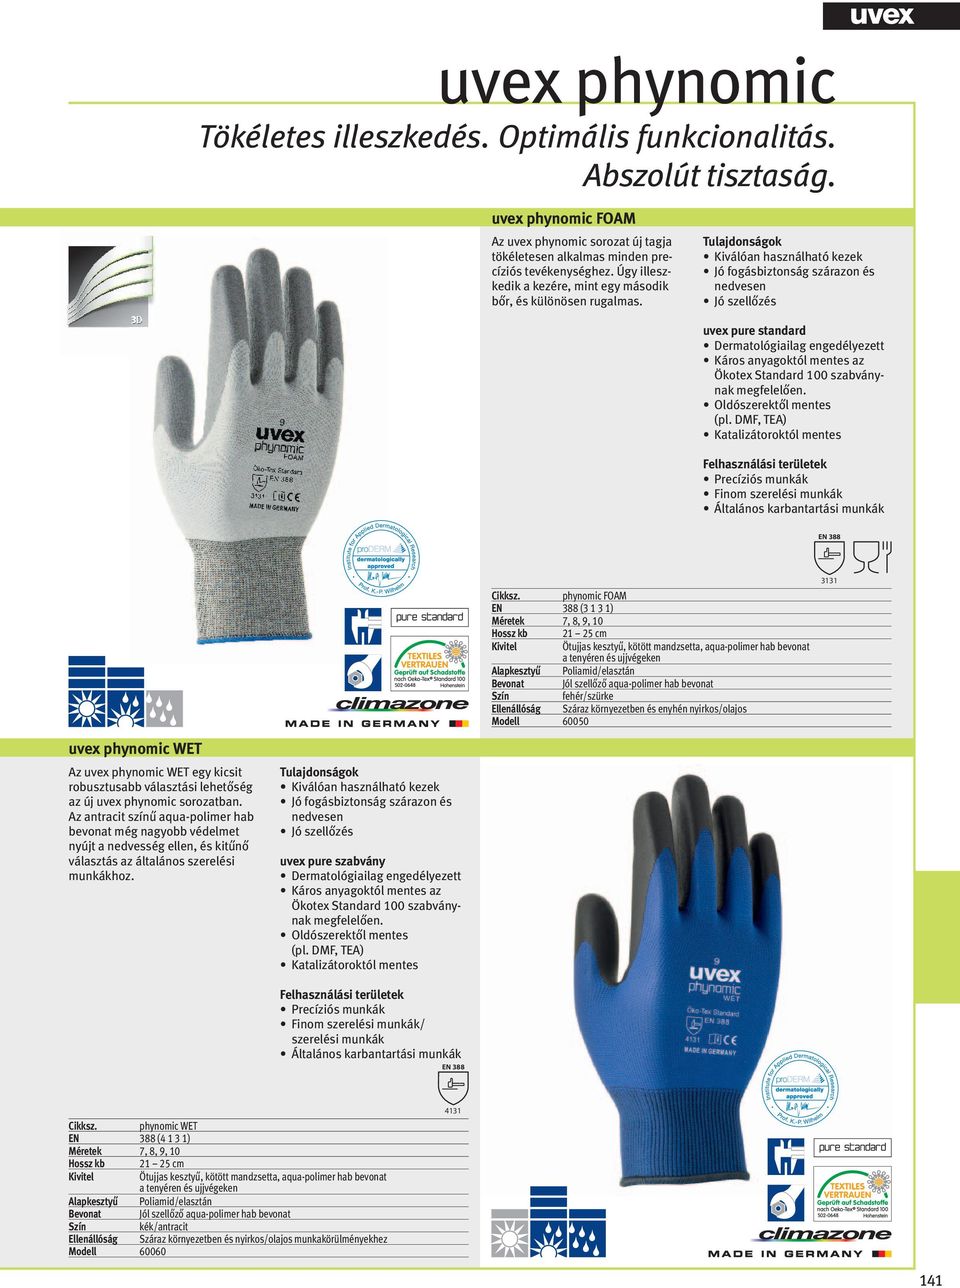 Kiválóan használható kezek Jó fogásbiztonság szárazon és nedvesen Jó szellőzés uvex pure standard Dermatológiailag engedélyezett Káros anyagoktól mentes az Ökotex Standard 100 szabványnak megfelelően.